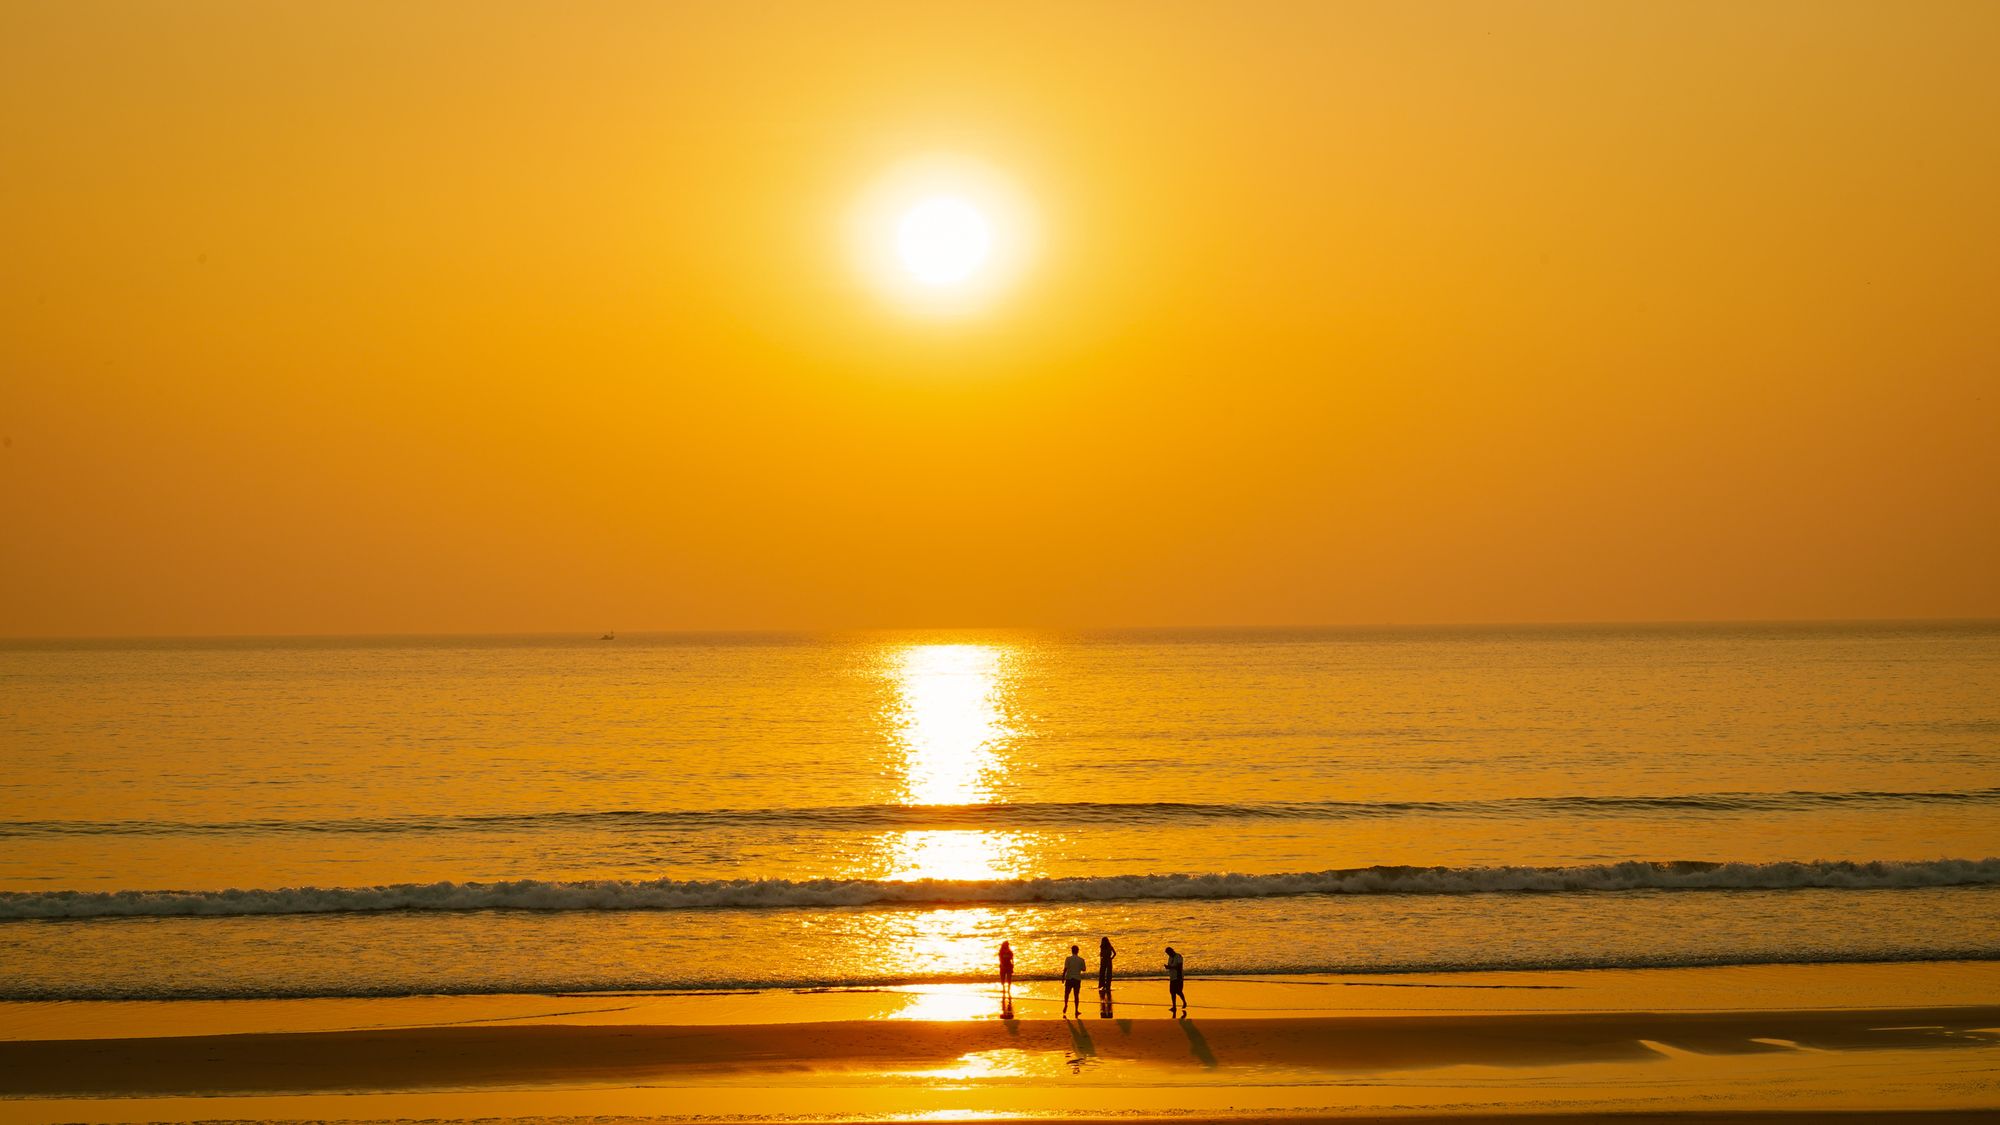 Top 10 Most Beautiful Beaches in Konkan